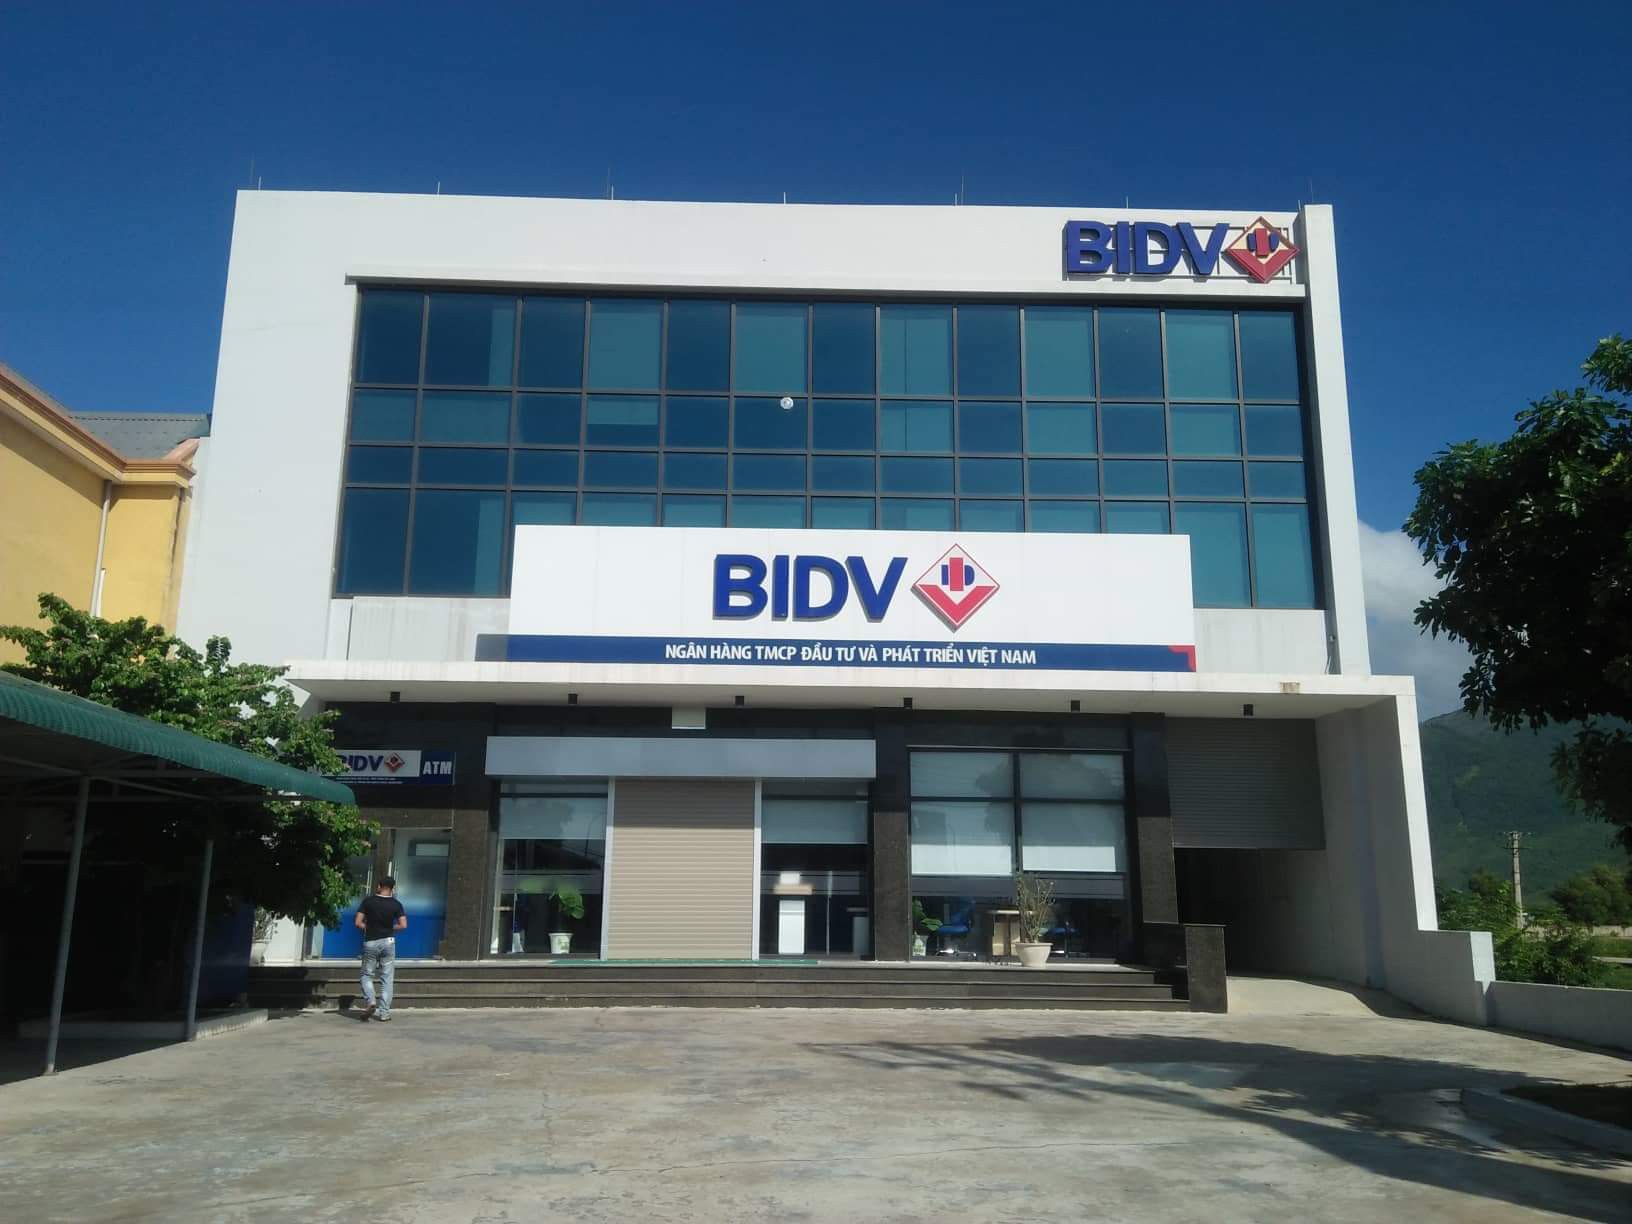 BIDV phát hành gói dịch vụ tài chính trực tuyến vừa miễn phí vừa tiện lợi